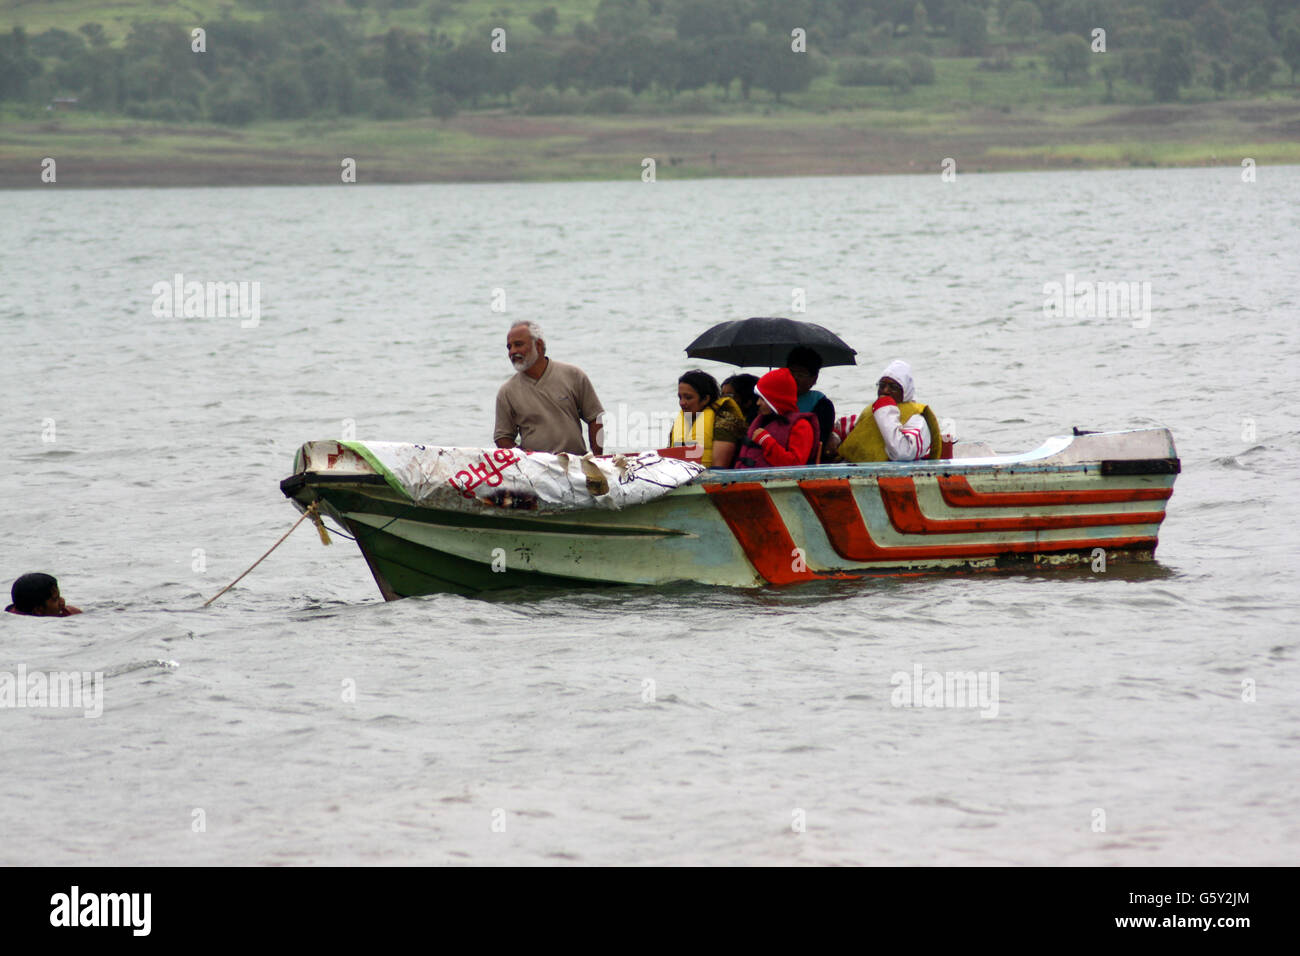 Un sauveteur, tirant un bateau de touristes bloqués dans une rivière en crue en Inde. Banque D'Images